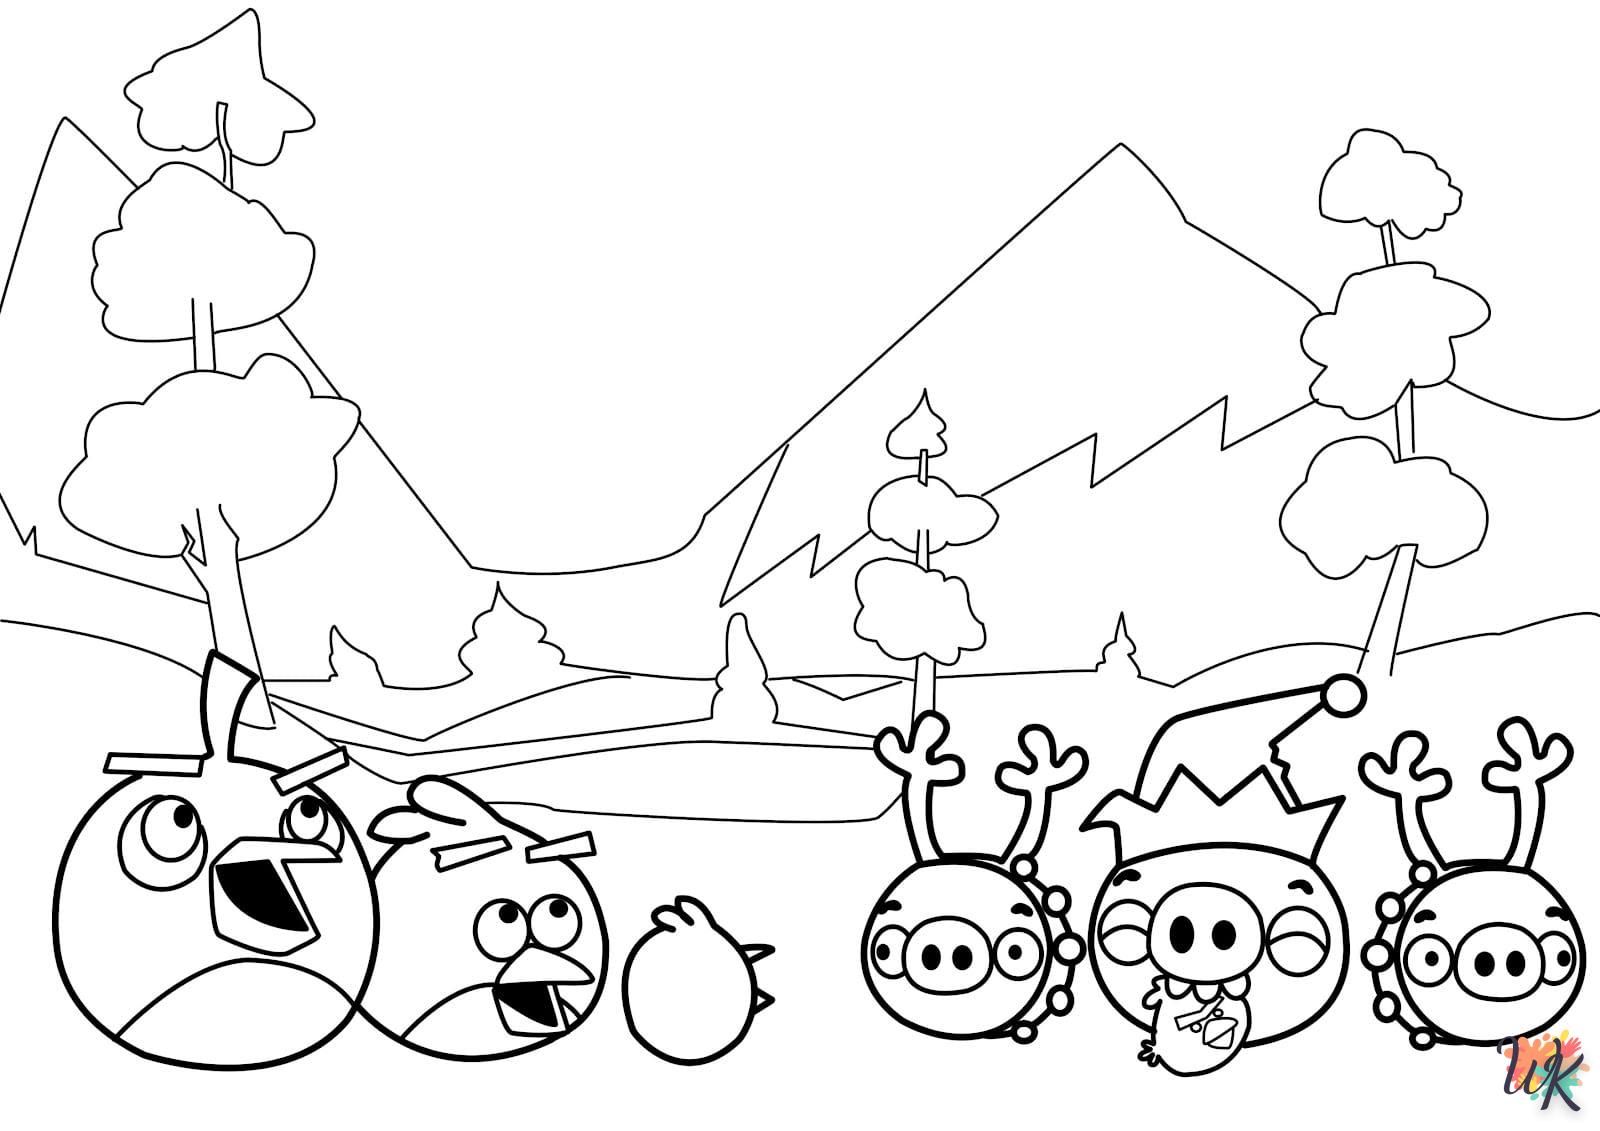 coloriage Angry Birds  a imprimer pour enfant de 4 ans 1